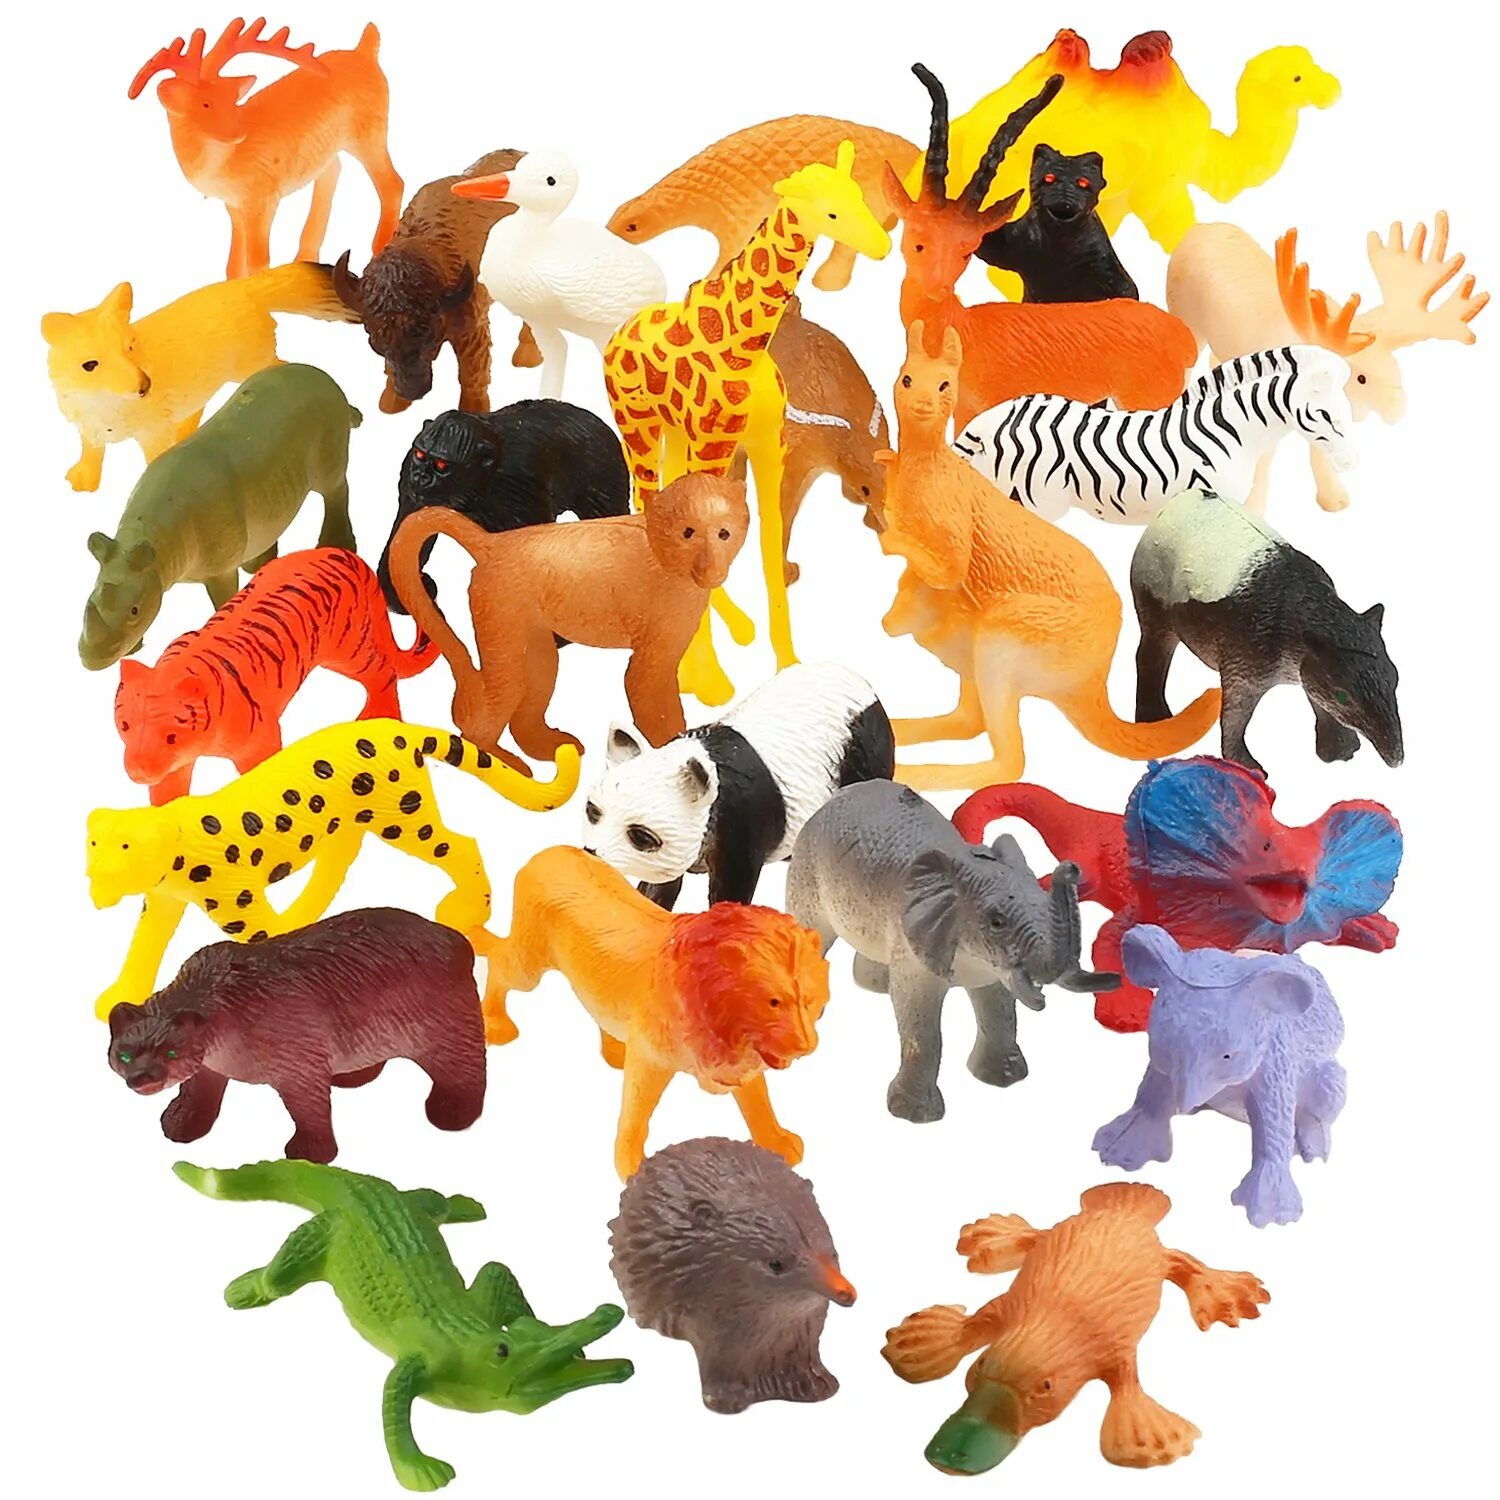 Игрушку animals. ПЭТ Энималс игрушка. Набор игрушек животных Pianet Wild сафари. DEAGOSTINI игрушки Wild animals Figure. Пластмассовые звери.